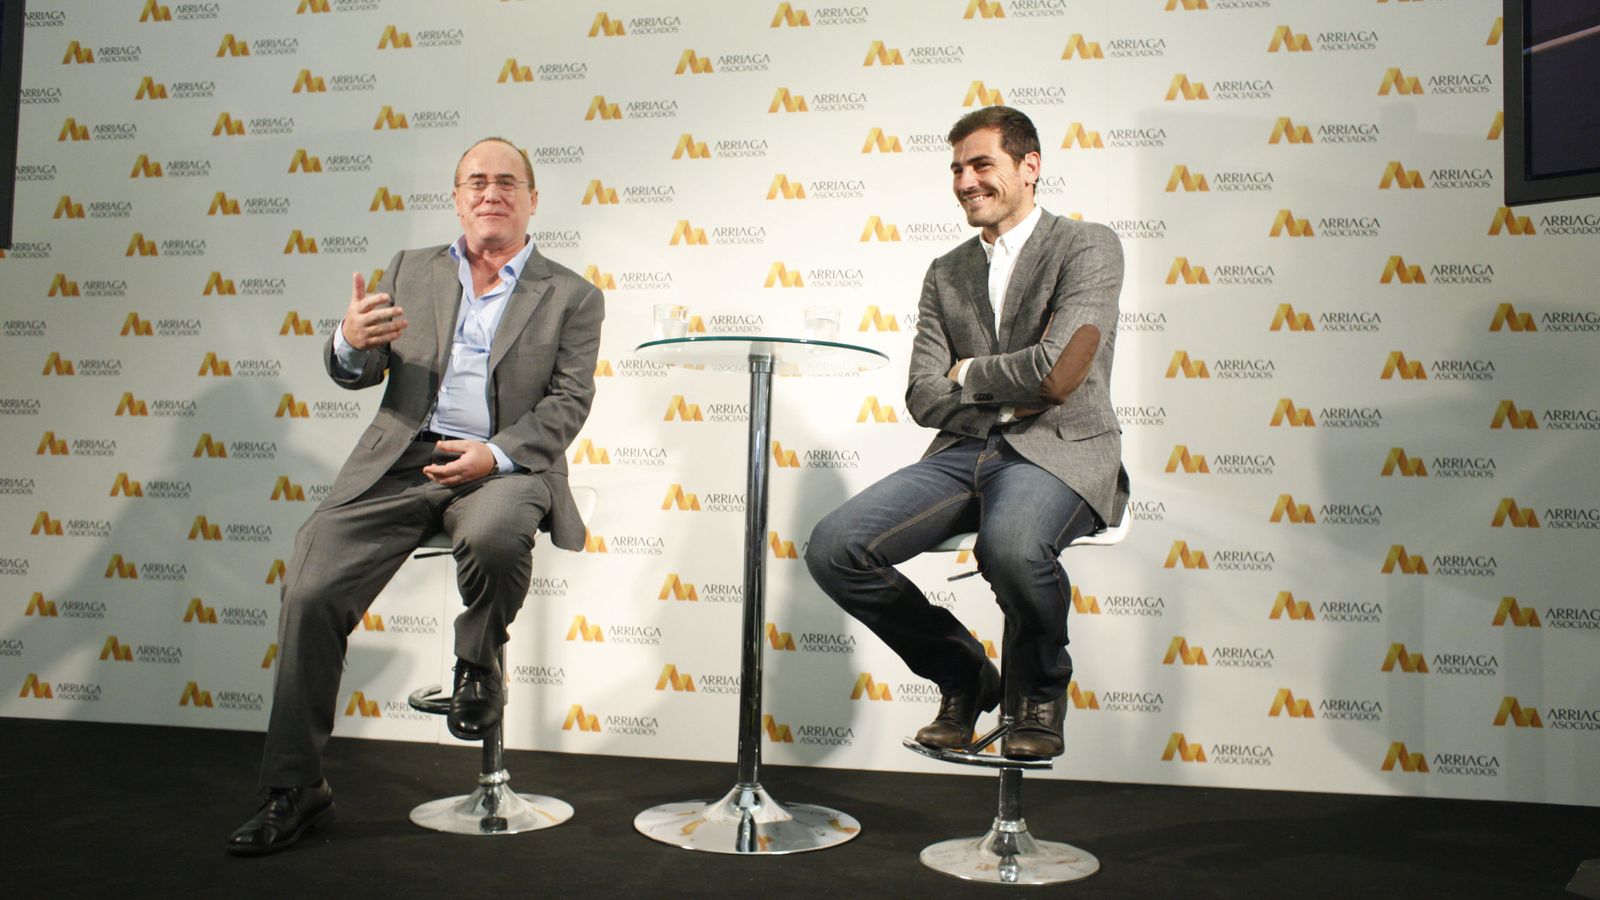 Foto: Jesús María Ruiz de Arriaga, director de Arriaga Asociados, con Iker Casillas. (Gtres)